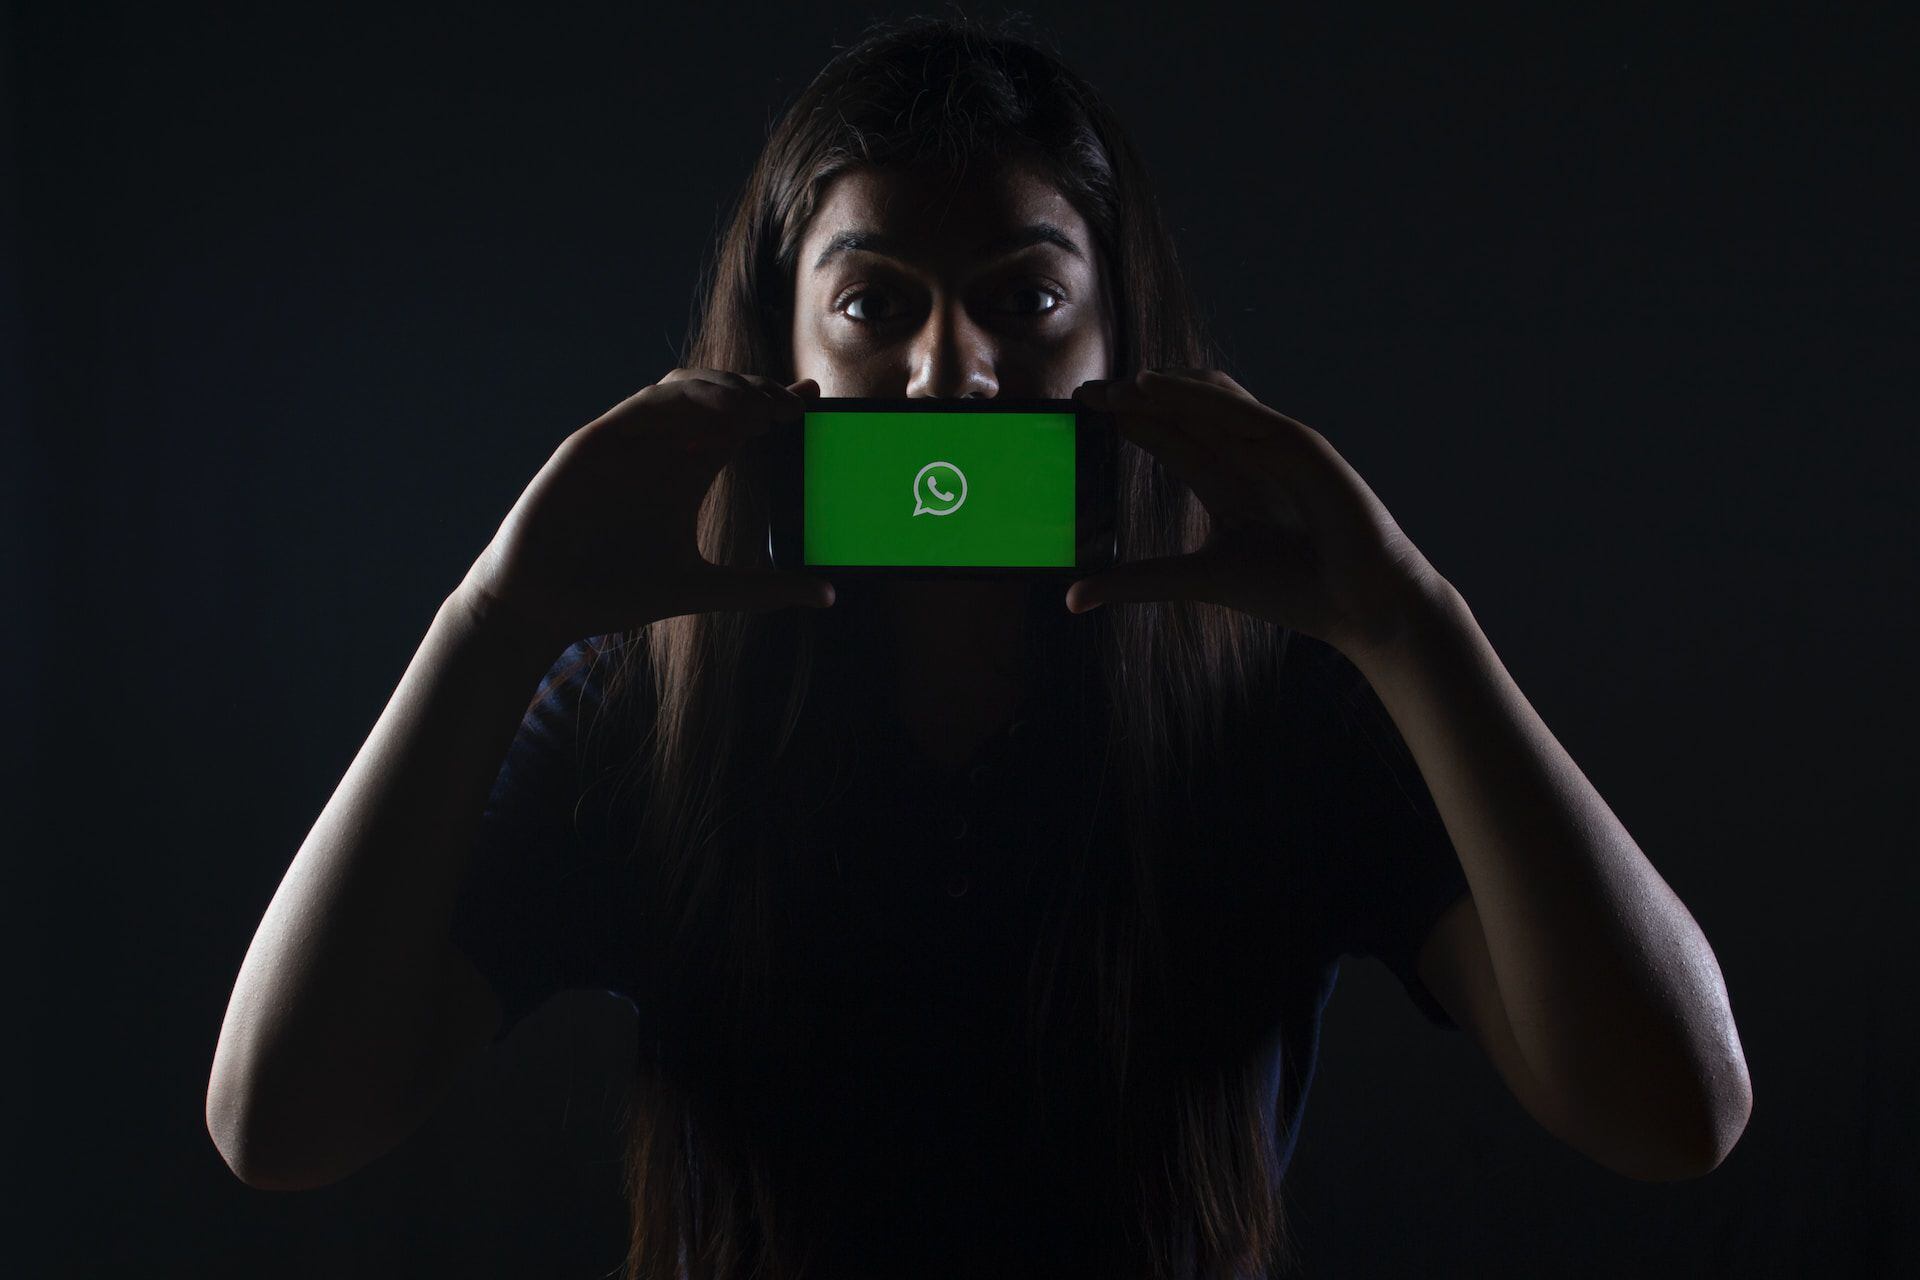 El "Modo Fantasma" en realidad son una serie de configuraciones de privacidad para mantener tu uso de WhatsApp oculto de otros usuarios. Fuente: Especial.